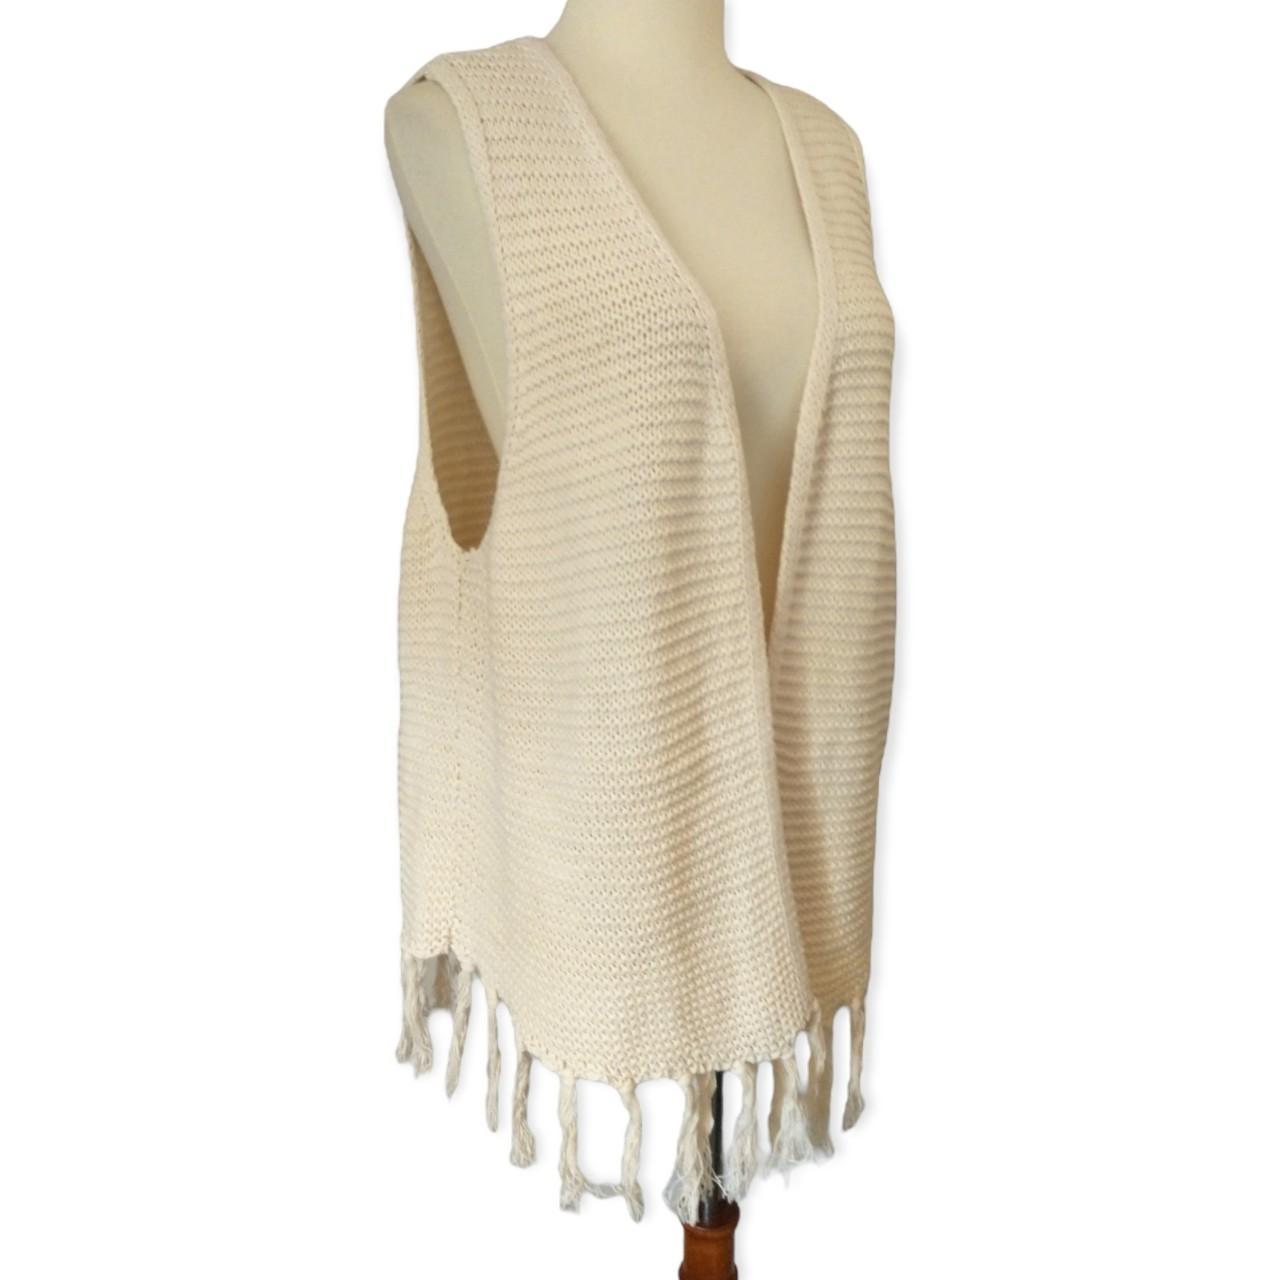 Product Image 2 - Boho Knit Fringed Vest L